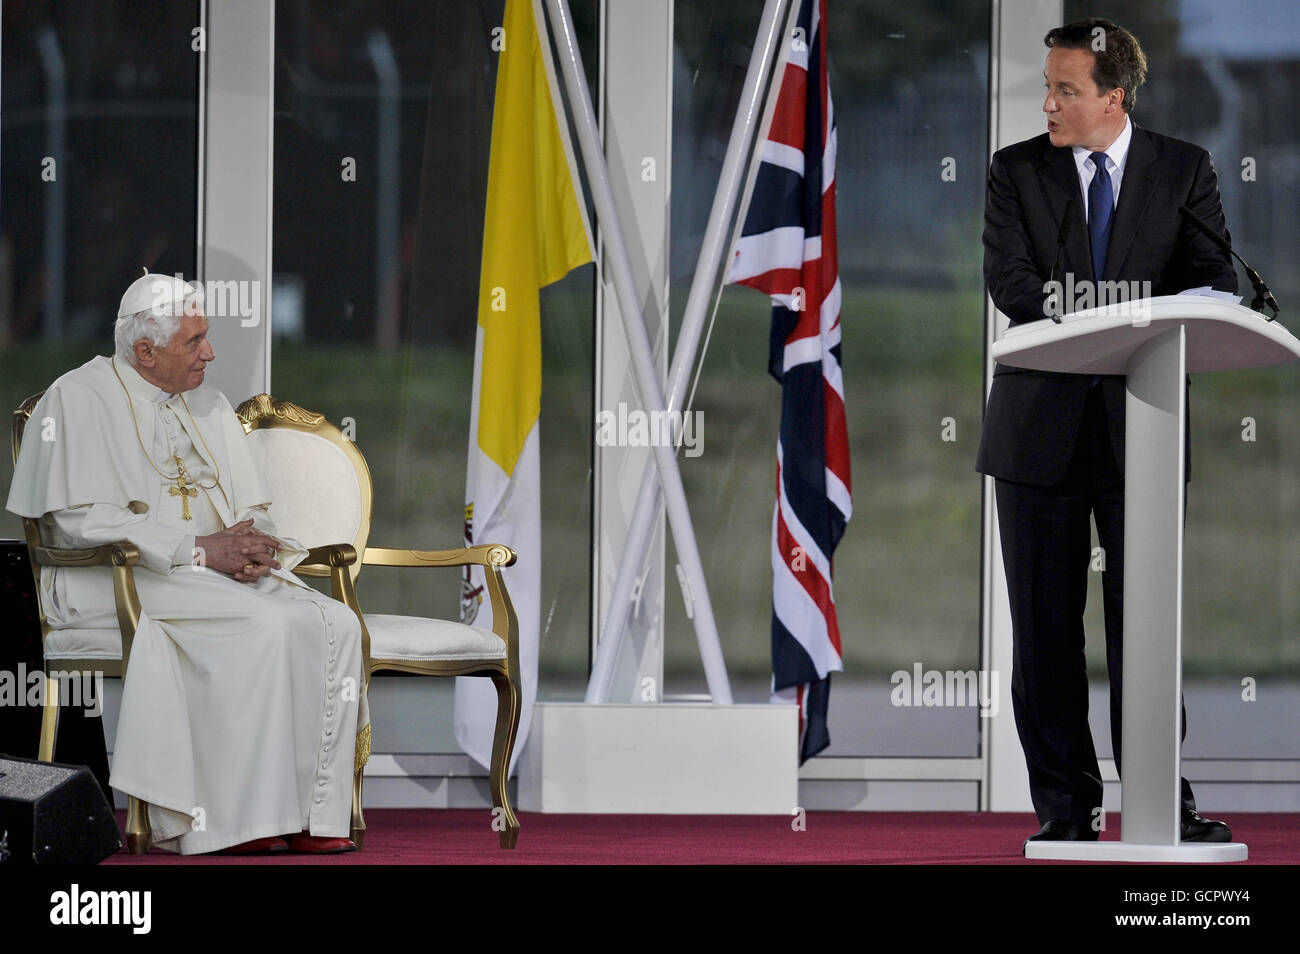 Le pape Benoît XVI écoute le Premier ministre David Cameron lors d'une cérémonie de départ à l'aéroport international de Birmingham le dernier jour de sa visite d'État au Royaume-Uni. Banque D'Images